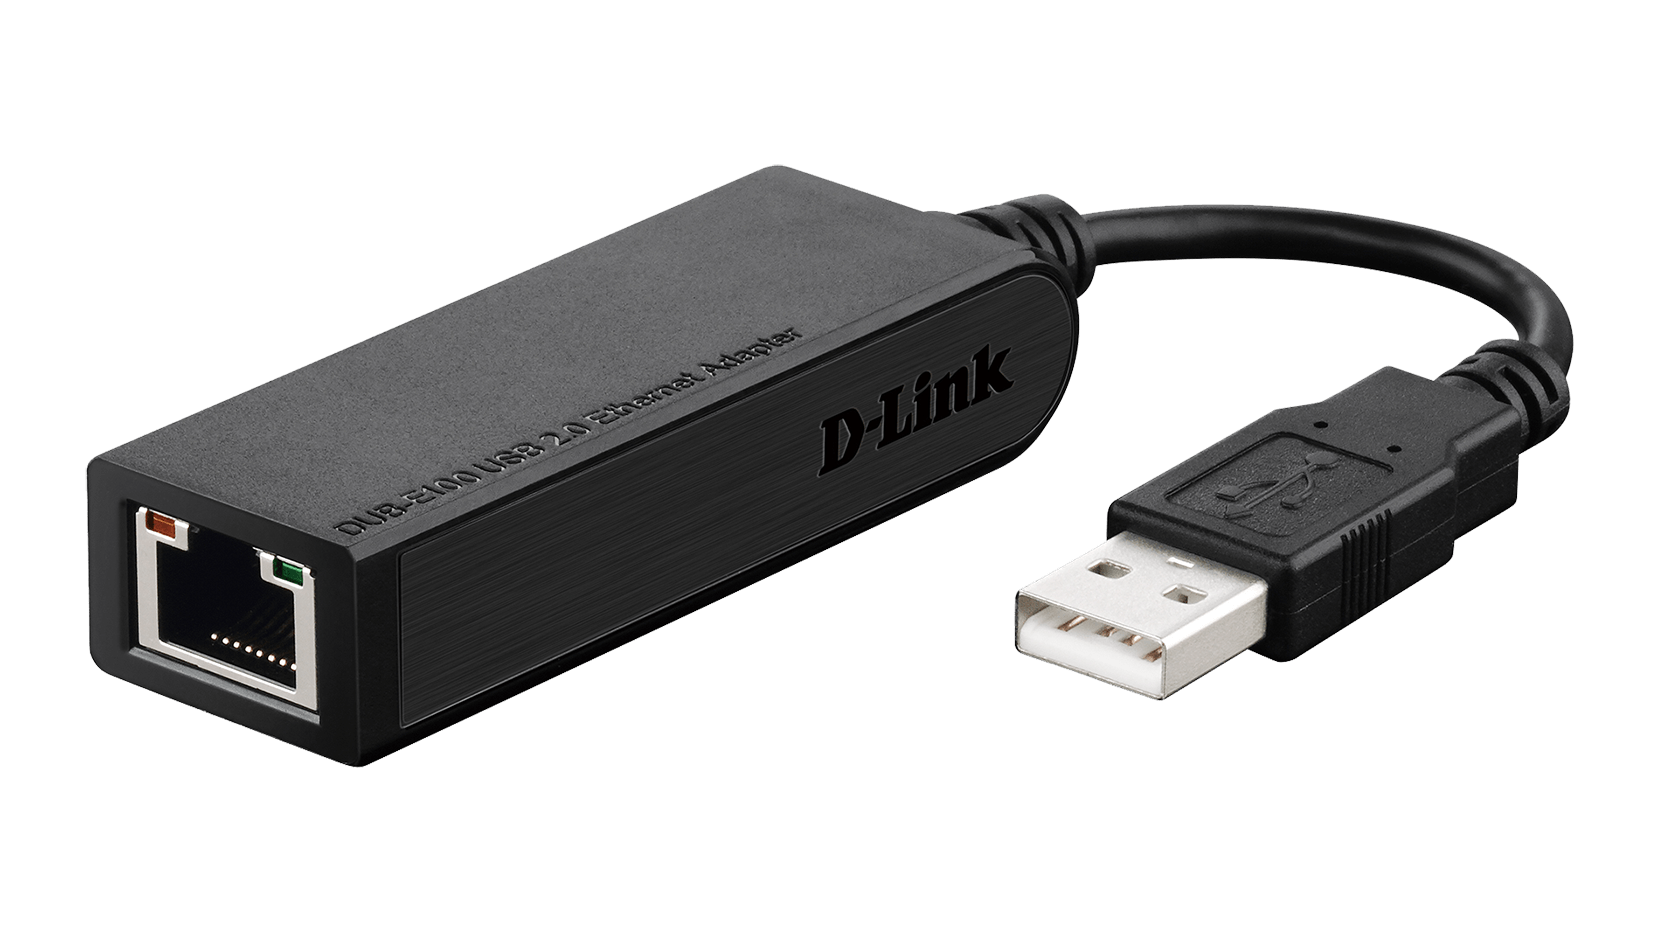 D-Link USB 2.0 10/100 Ethernet Adapter